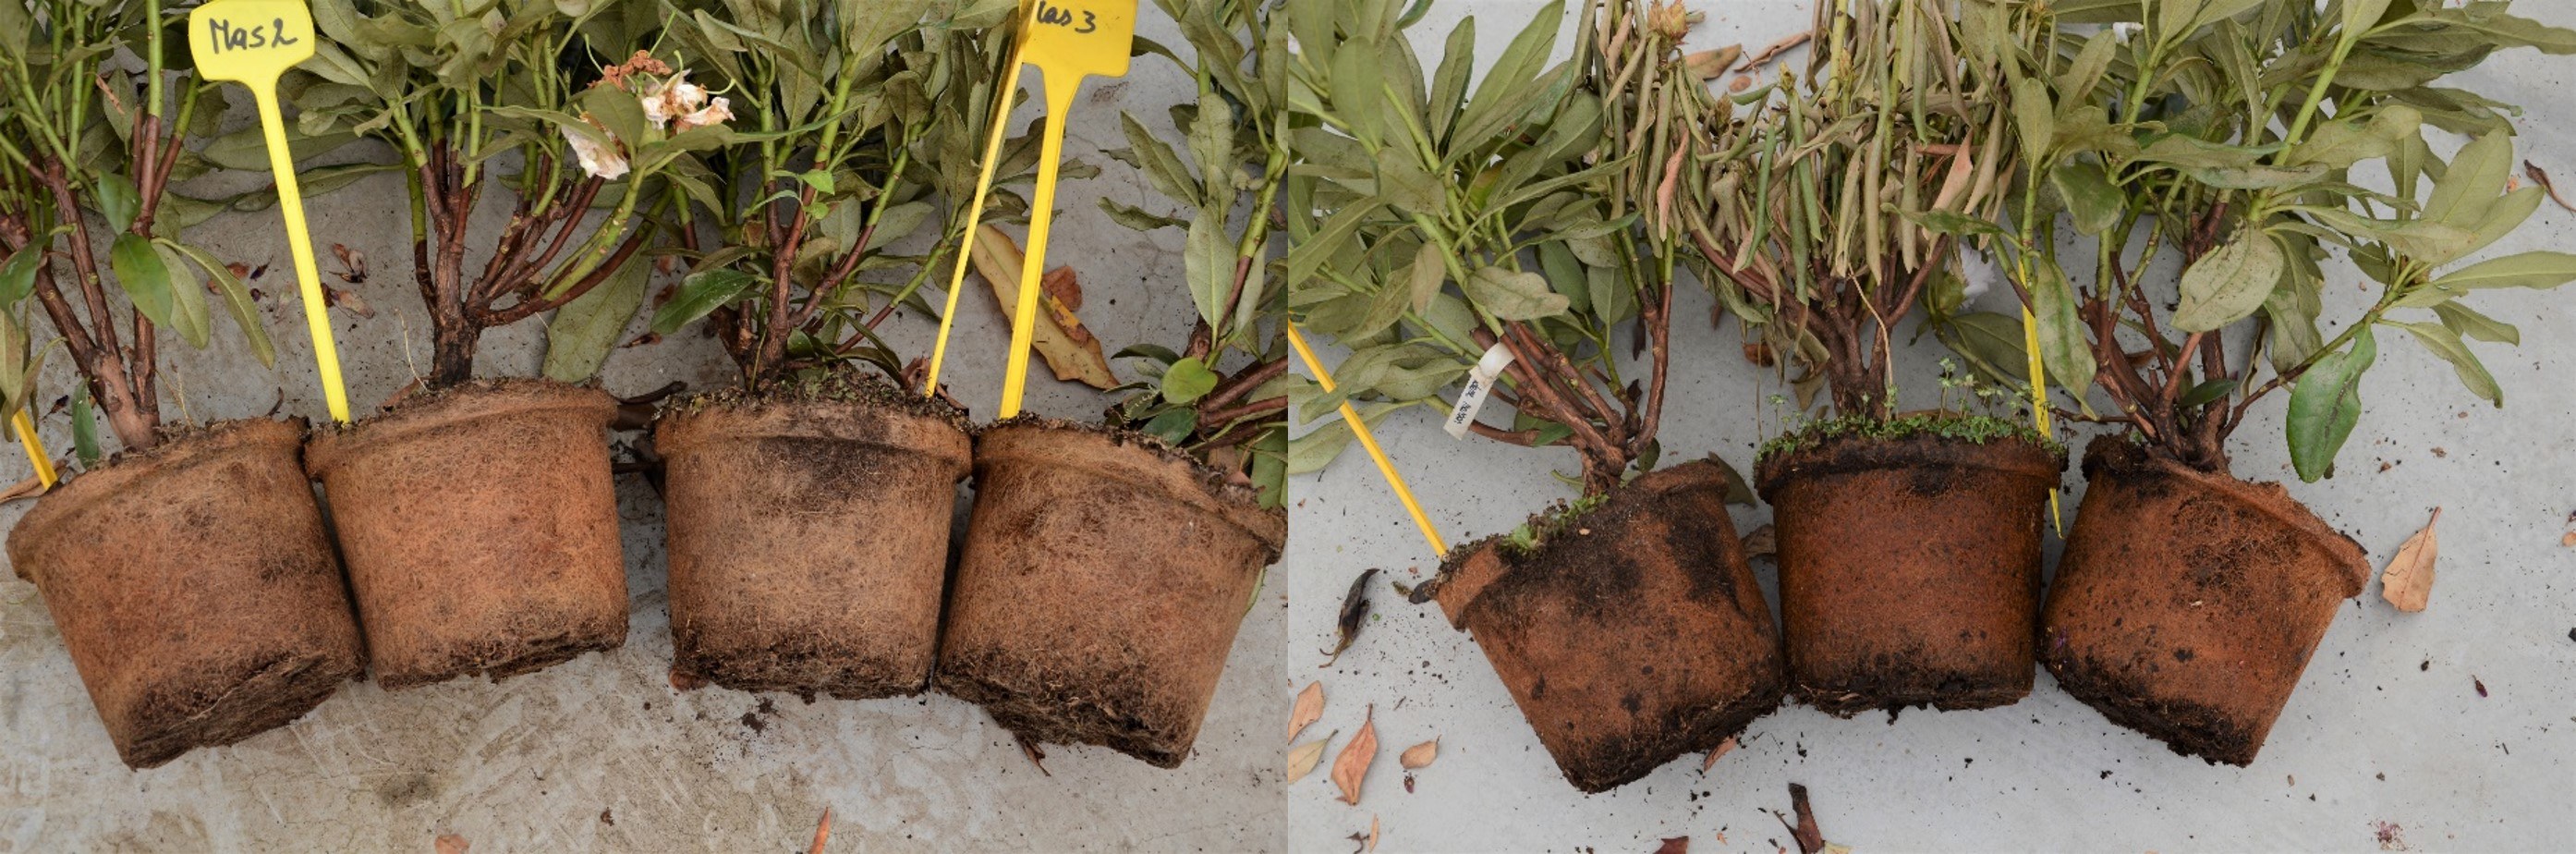 Planten zonder (links) en met (rechts) Phytophthora symptomen: aangetaste (donkerbruine) wortels en verwelking/afsterven (middelste plant).